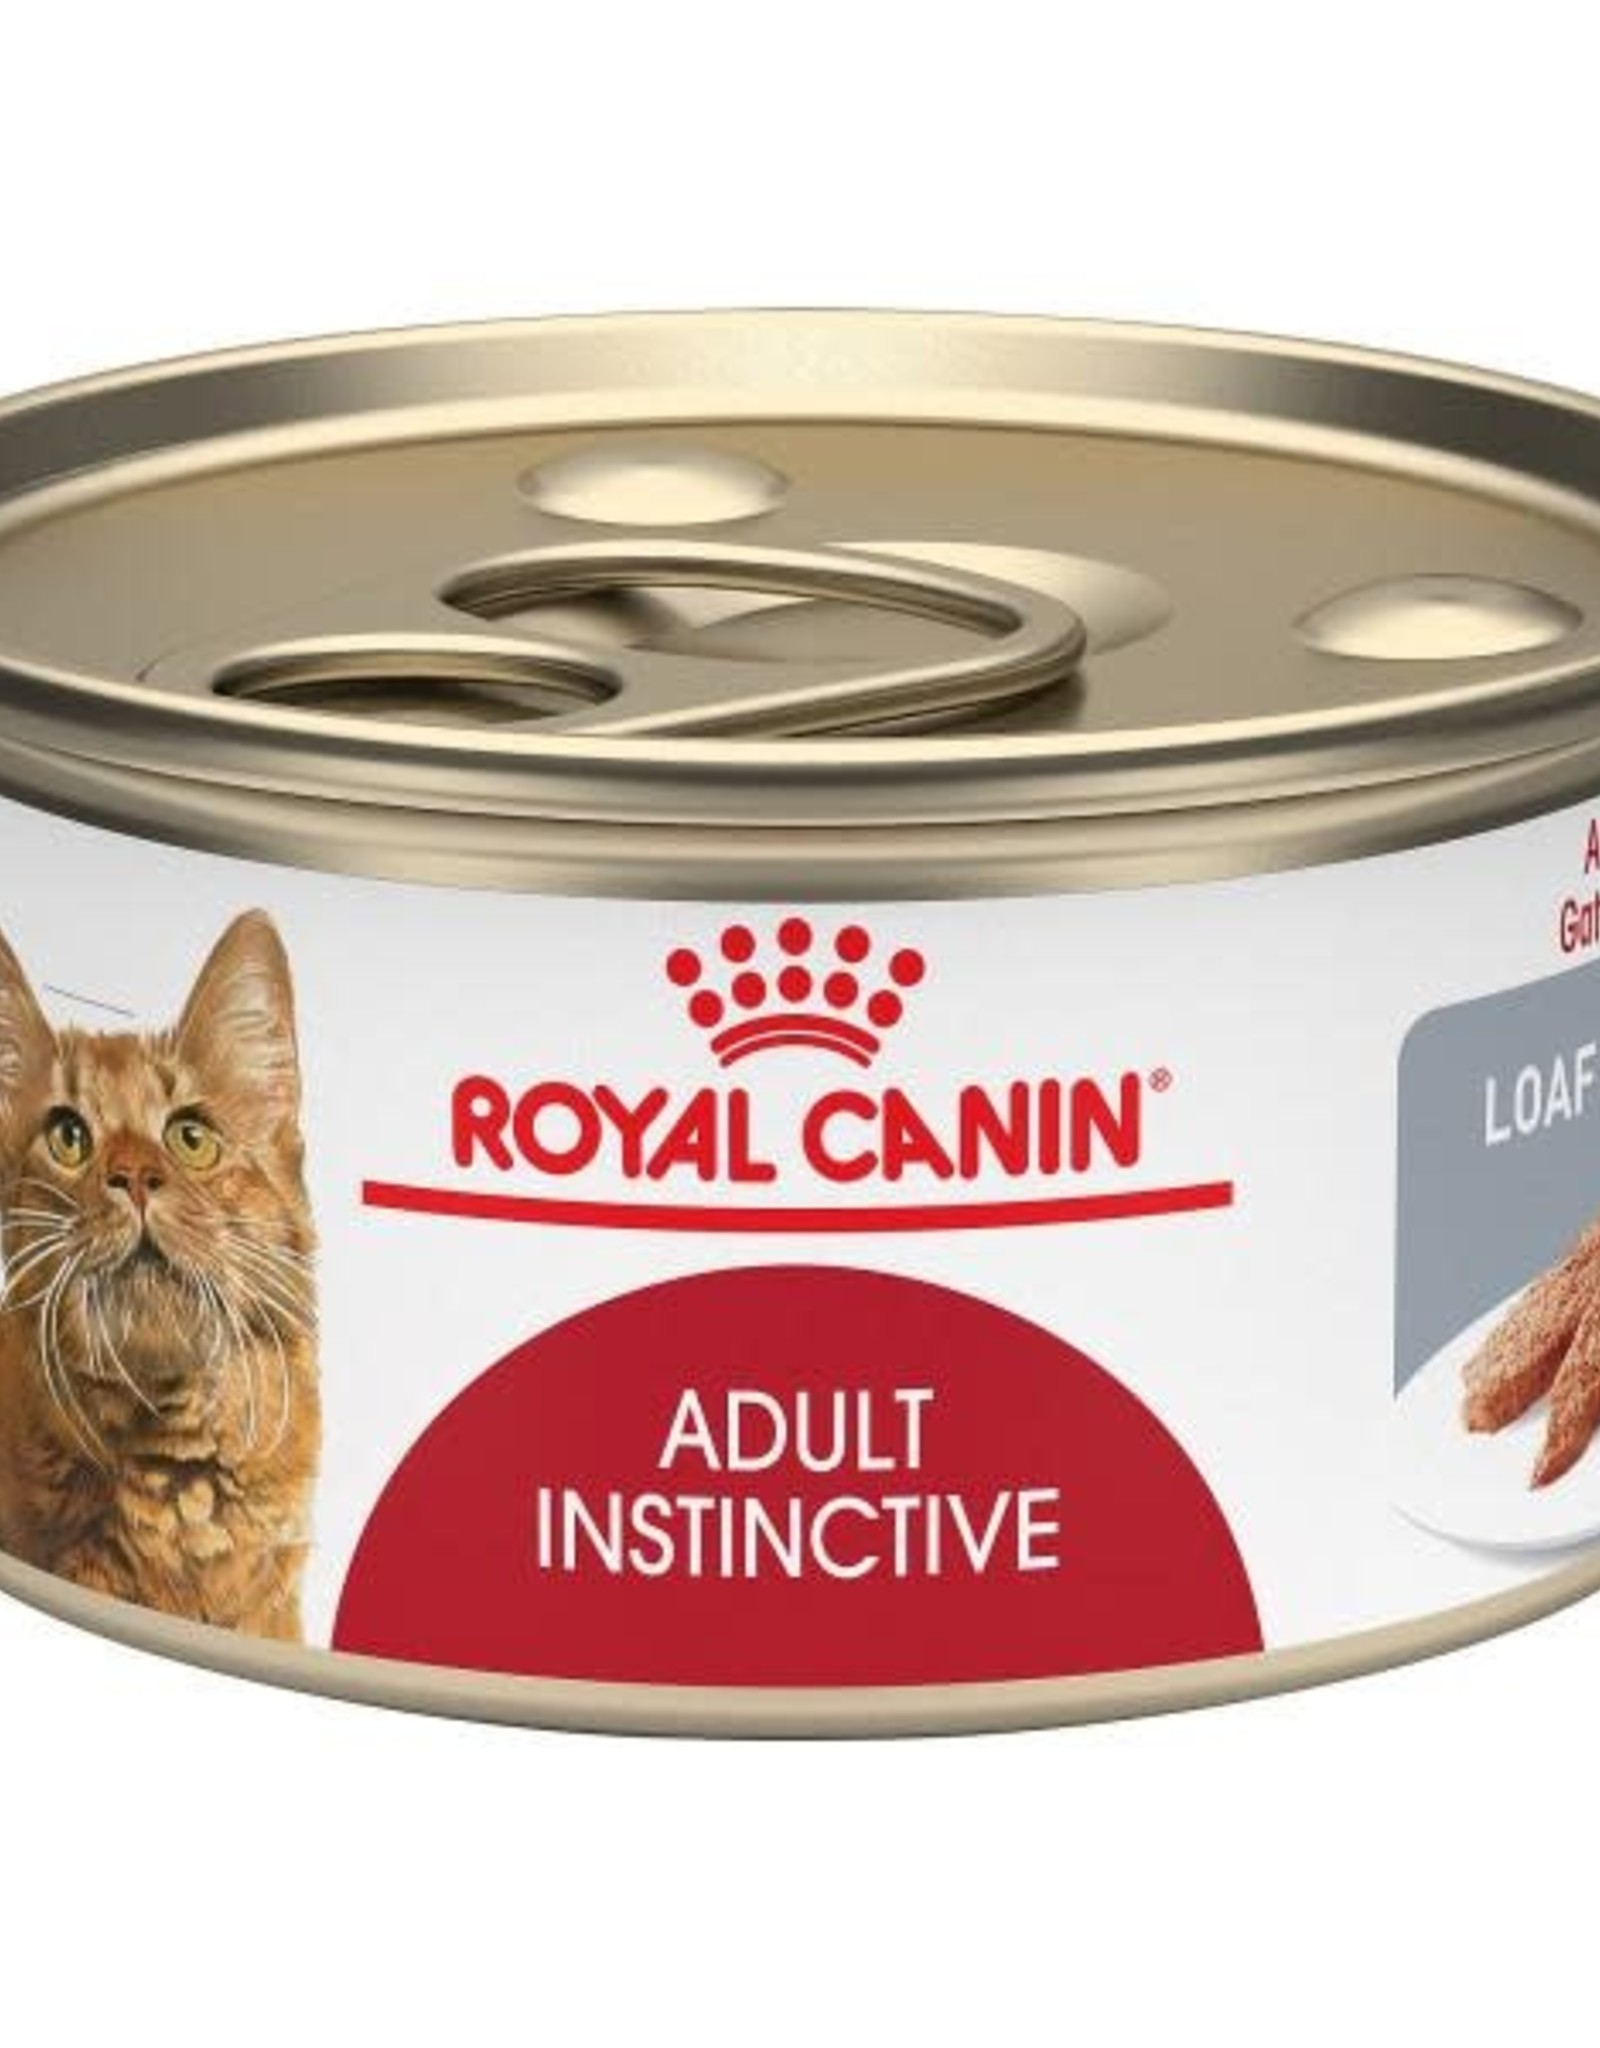 Royal Canine Royal Canin Feline Health Nutrition Adult Instinctive Loaf Sauce Cat 24 / 3 oz